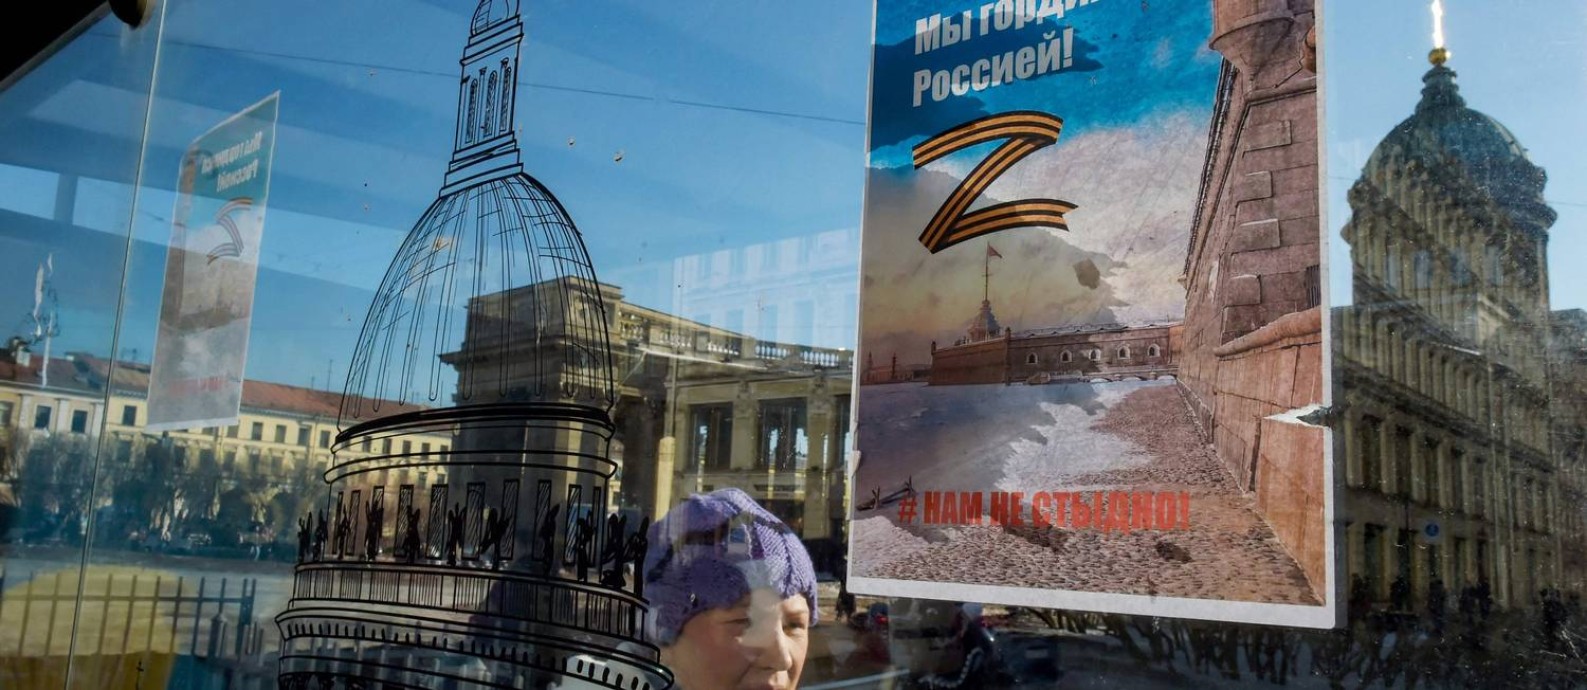 Mulher passa diante de cartaz a favor da guerra na Ucrânia, colado em ponto de ônibus da Nevsky Prospekt, principal avenida de São Petersburgo Foto: - / AFP